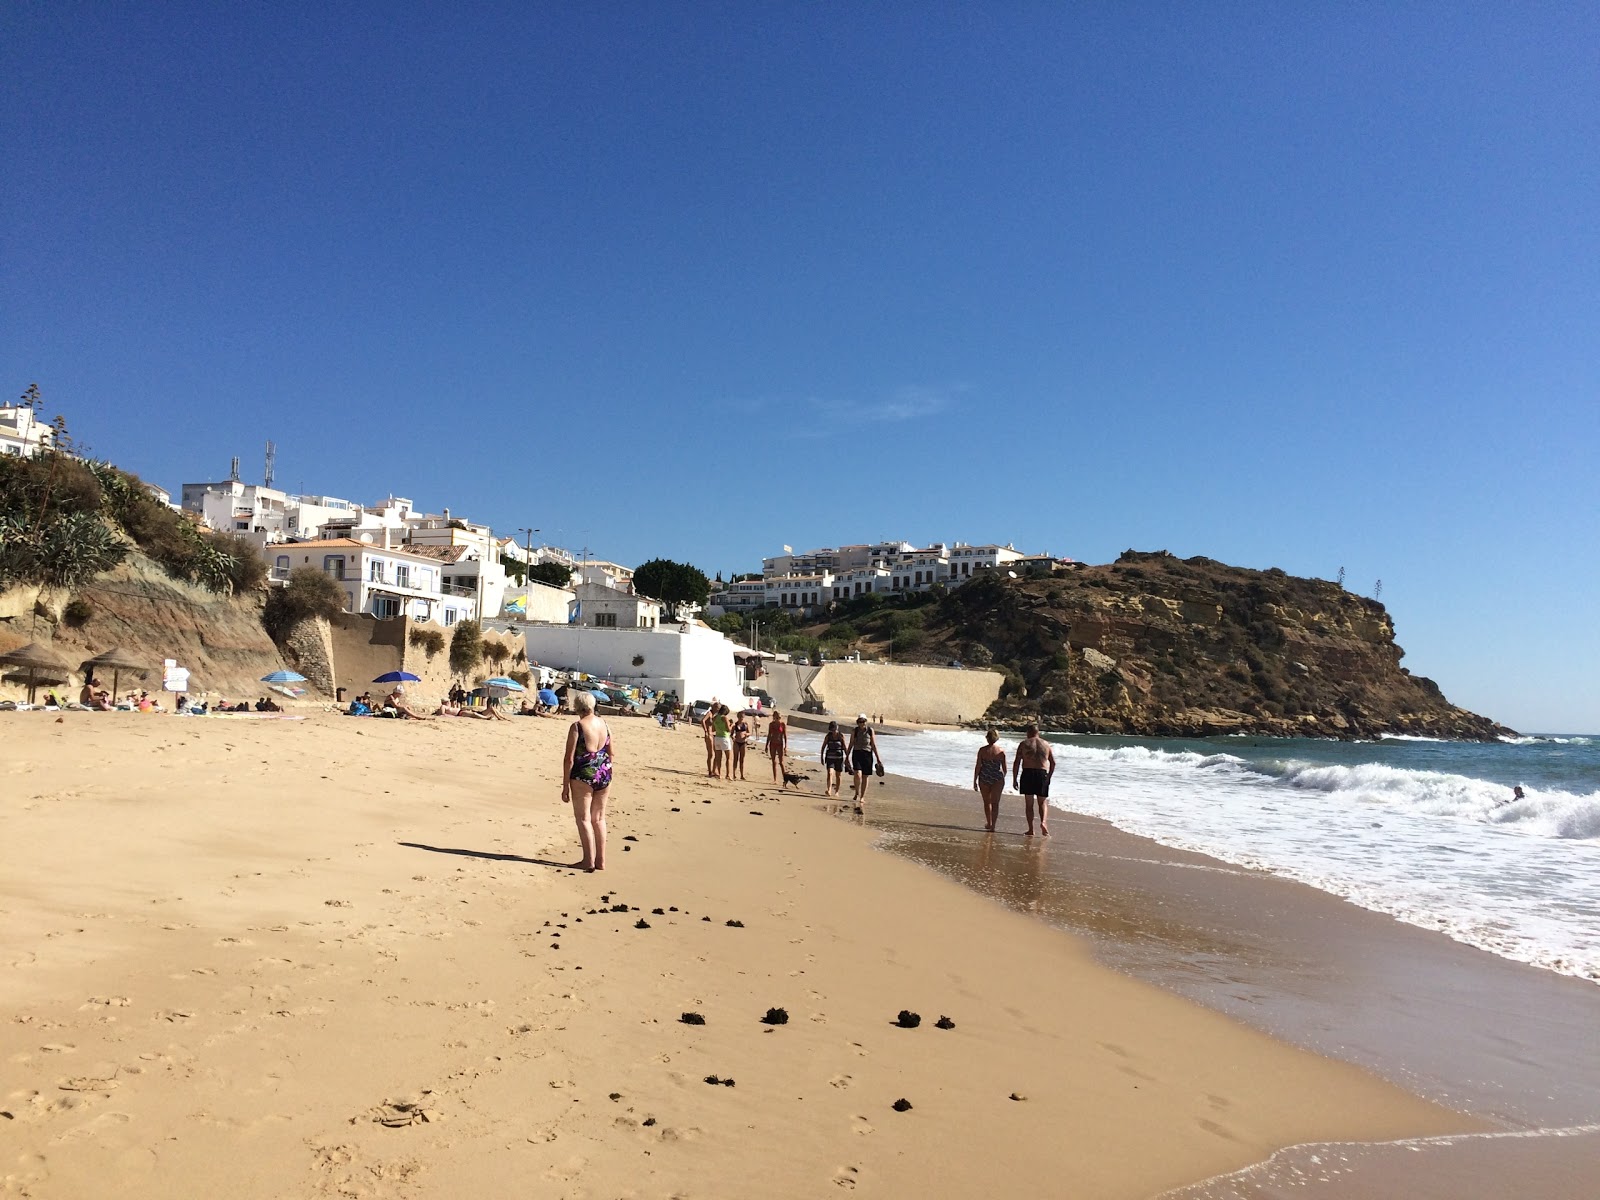 Praia do Burgau'in fotoğrafı - rahatlamayı sevenler arasında popüler bir yer